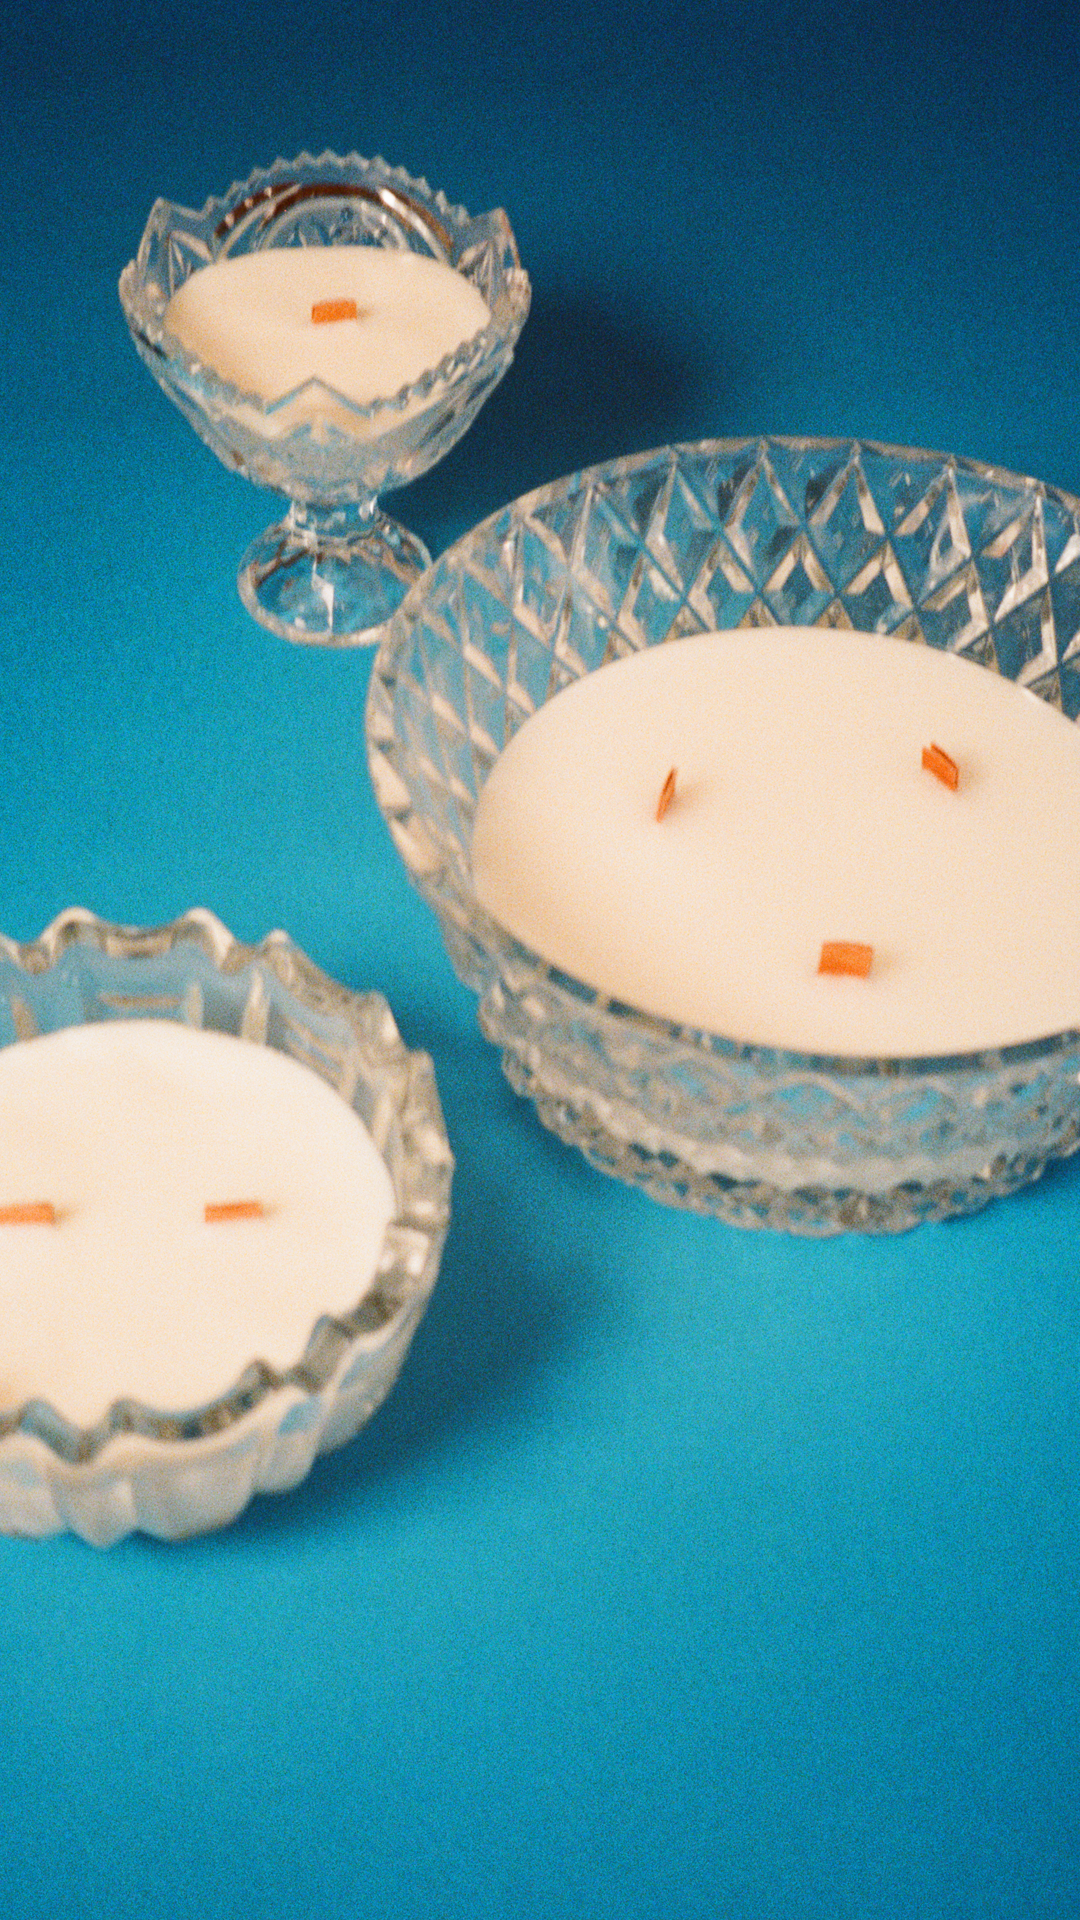 Апсайкл-проект Kryshtal выпустил коллекцию свечей в хрустальных вазах (фото 1)